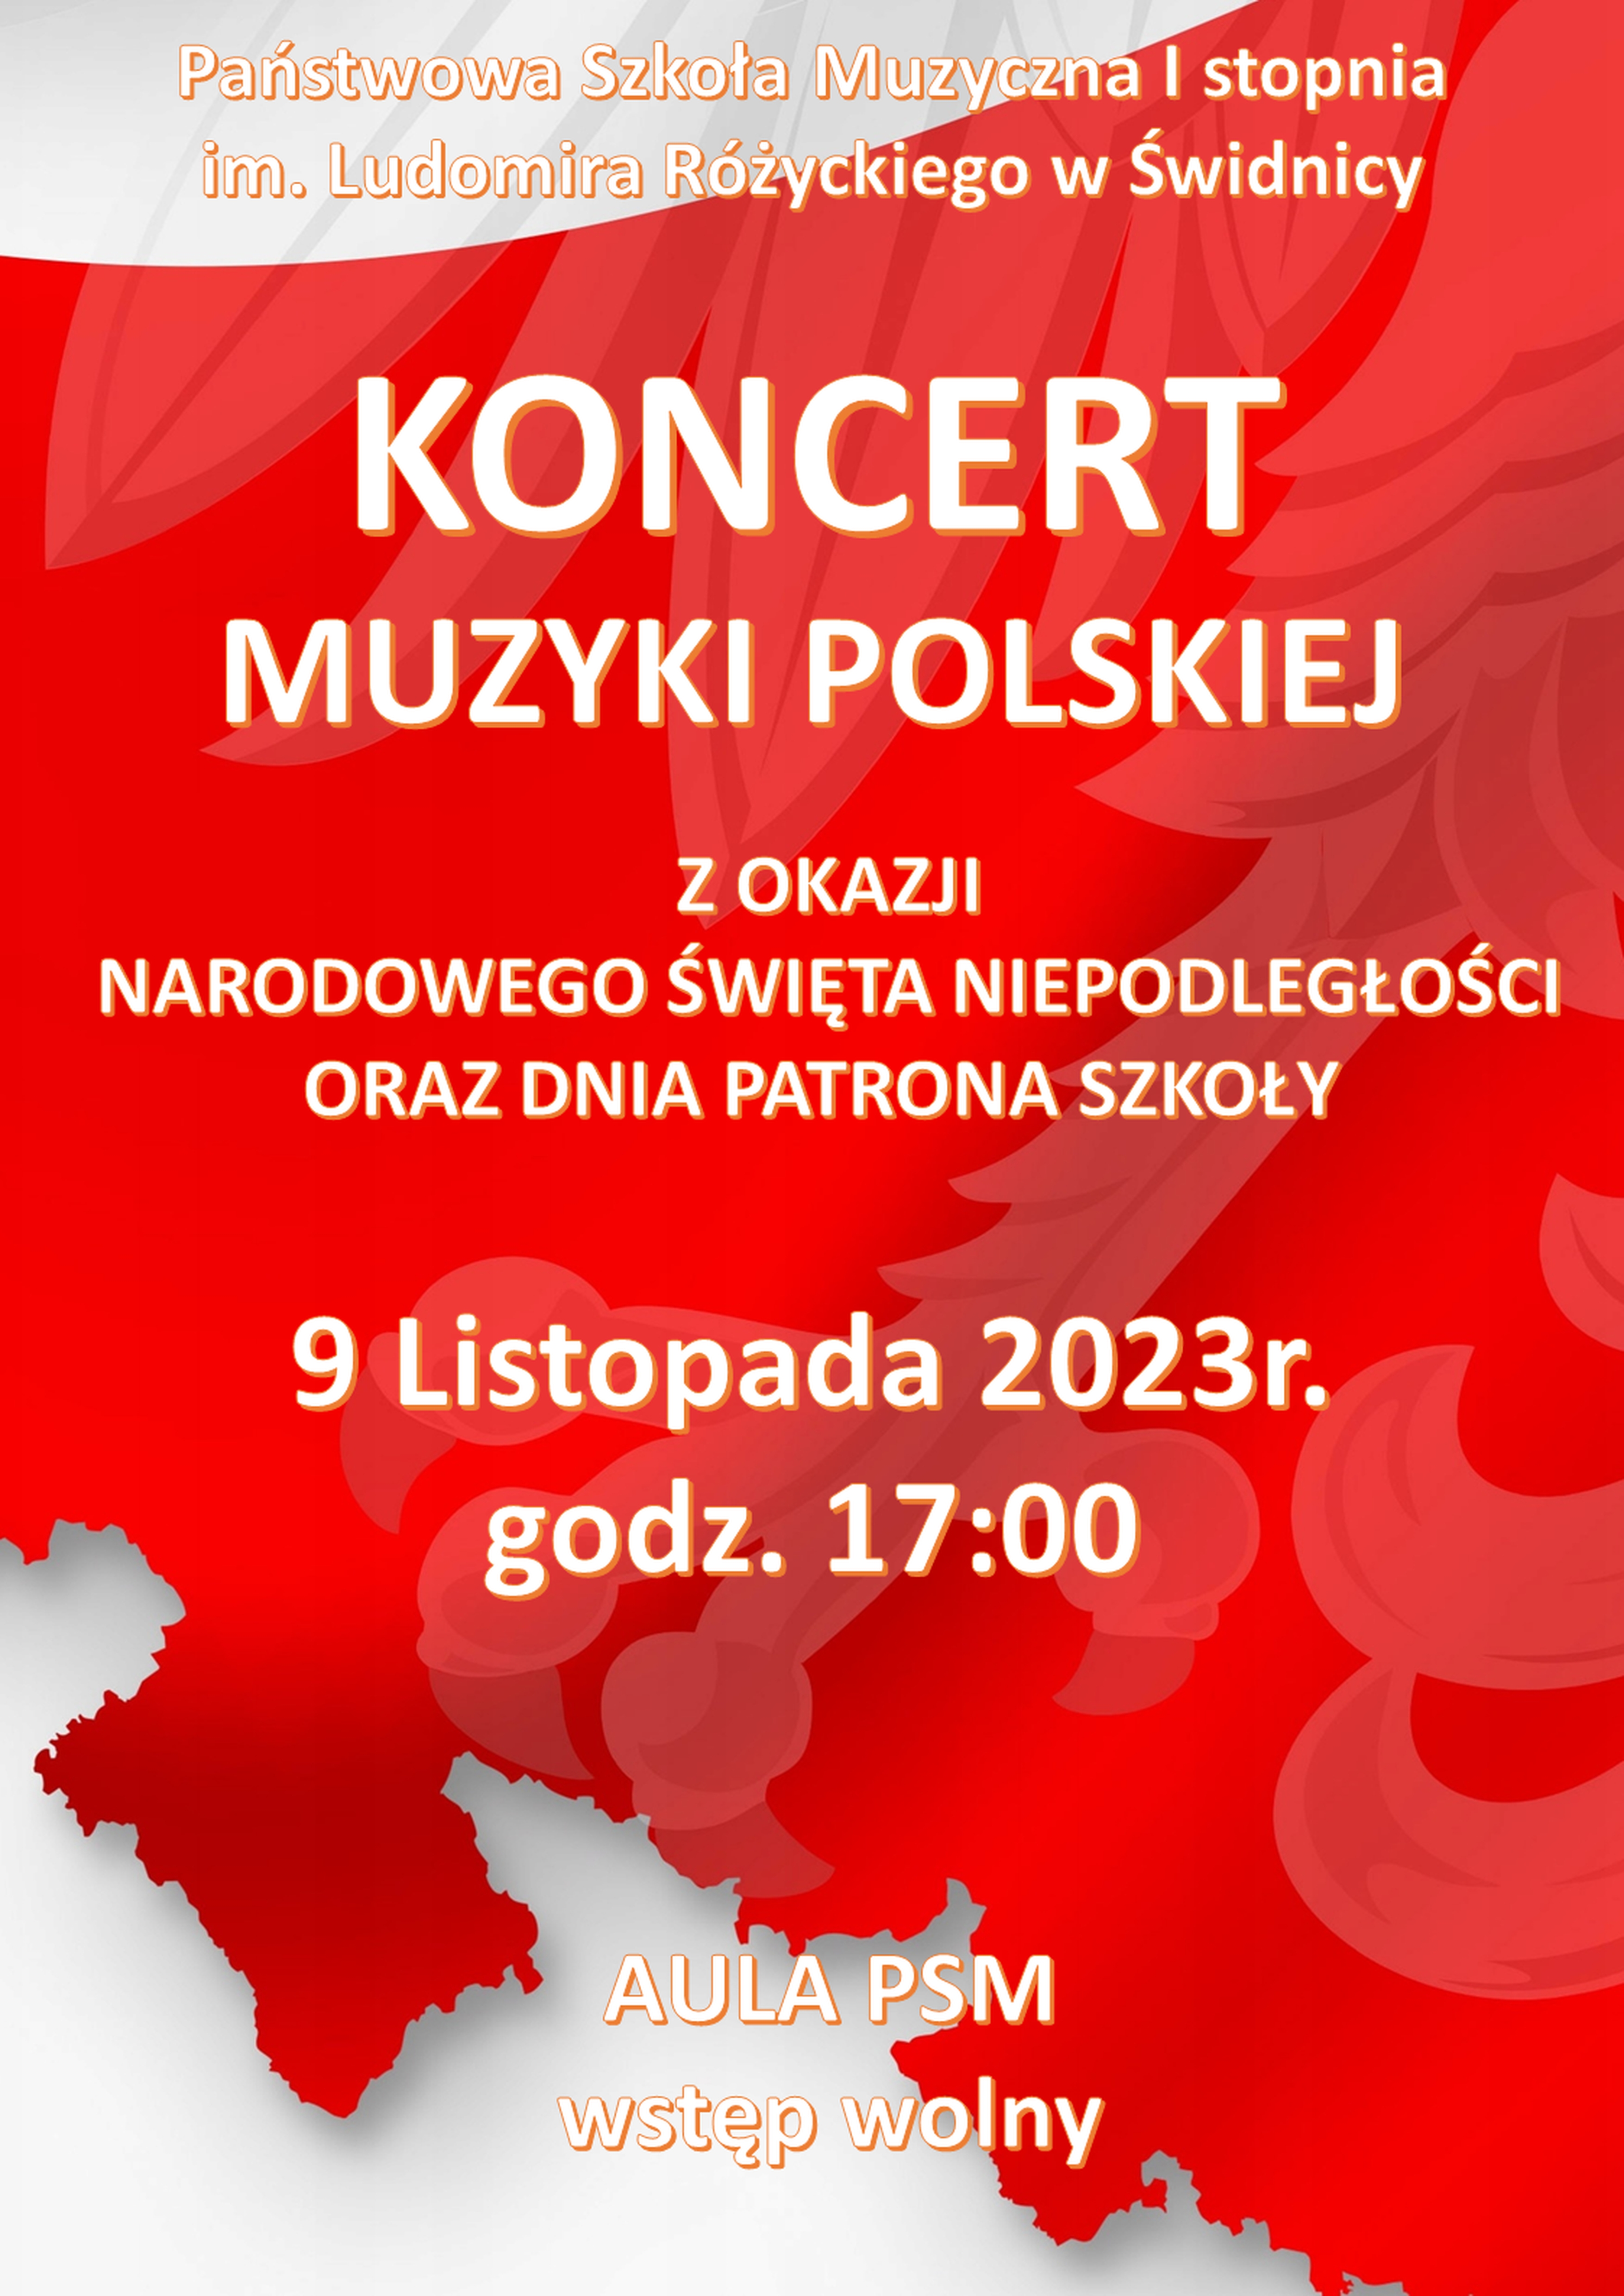 Plakat informujący o koncercie 9 listopada Barwy białoczerwone , zarys mapy polski (fragment) . Białe napisy. W tle zarys orła białego .